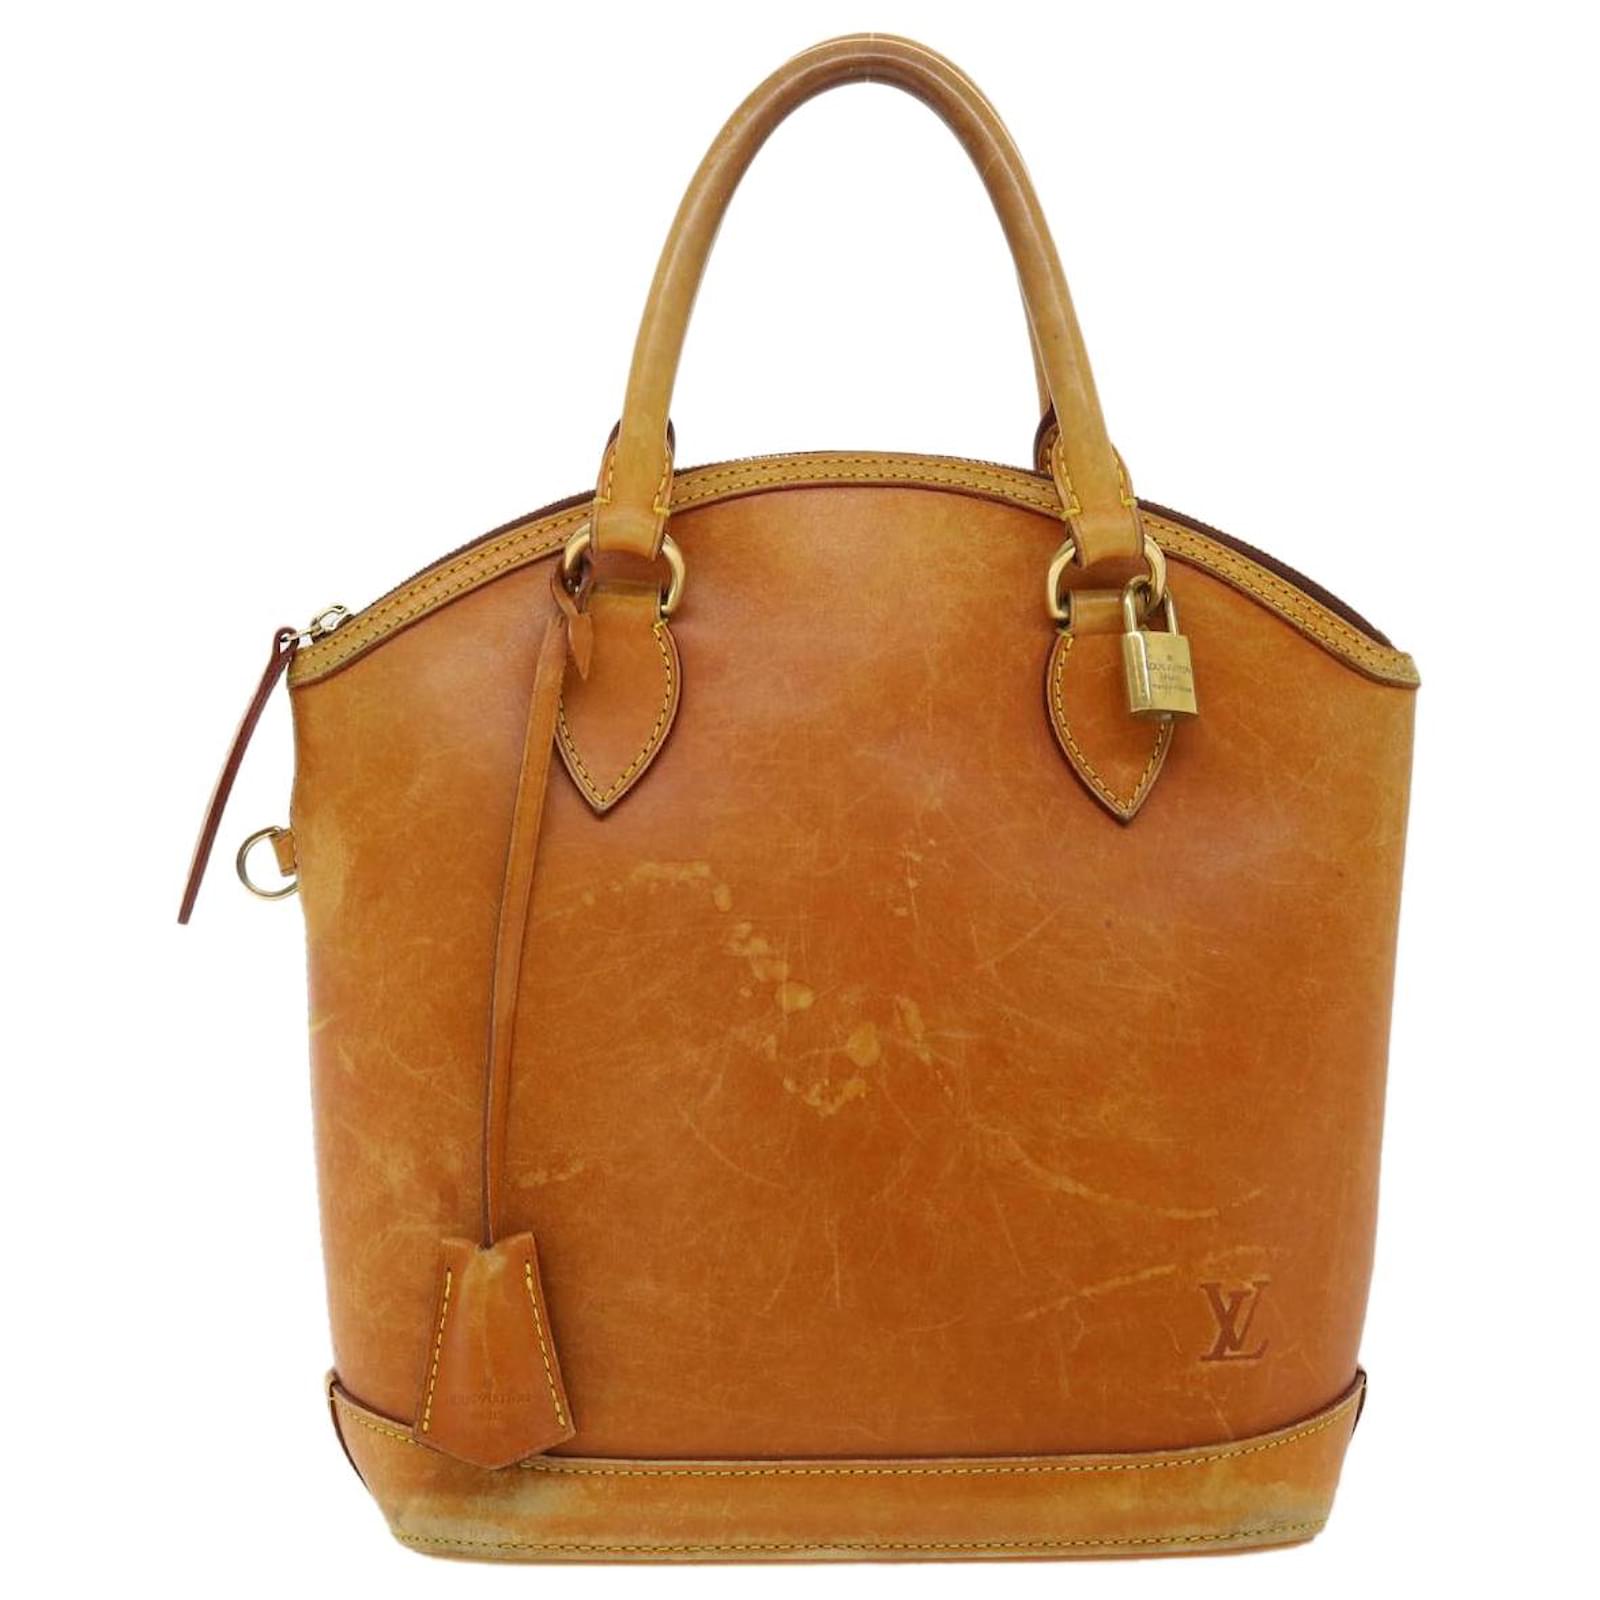 Louis Vuitton Lockit Tote Bag handbag Hand Bag Monogram Brown M40102 Women